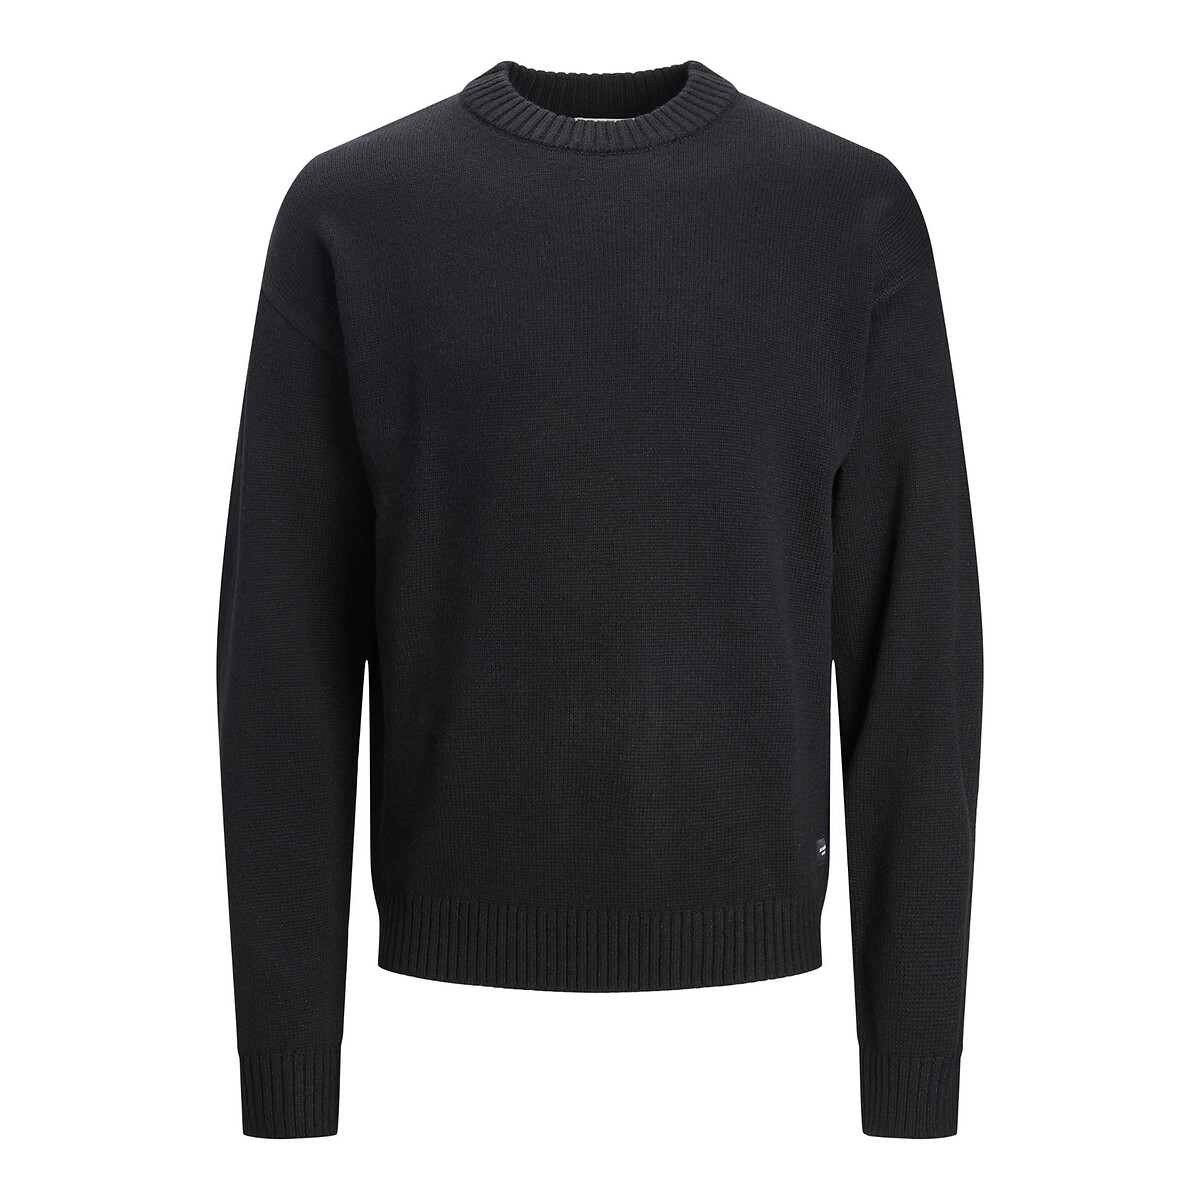 Пуловер С круглым вырезом Jjejack S черный LaRedoute, размер S - фото 5